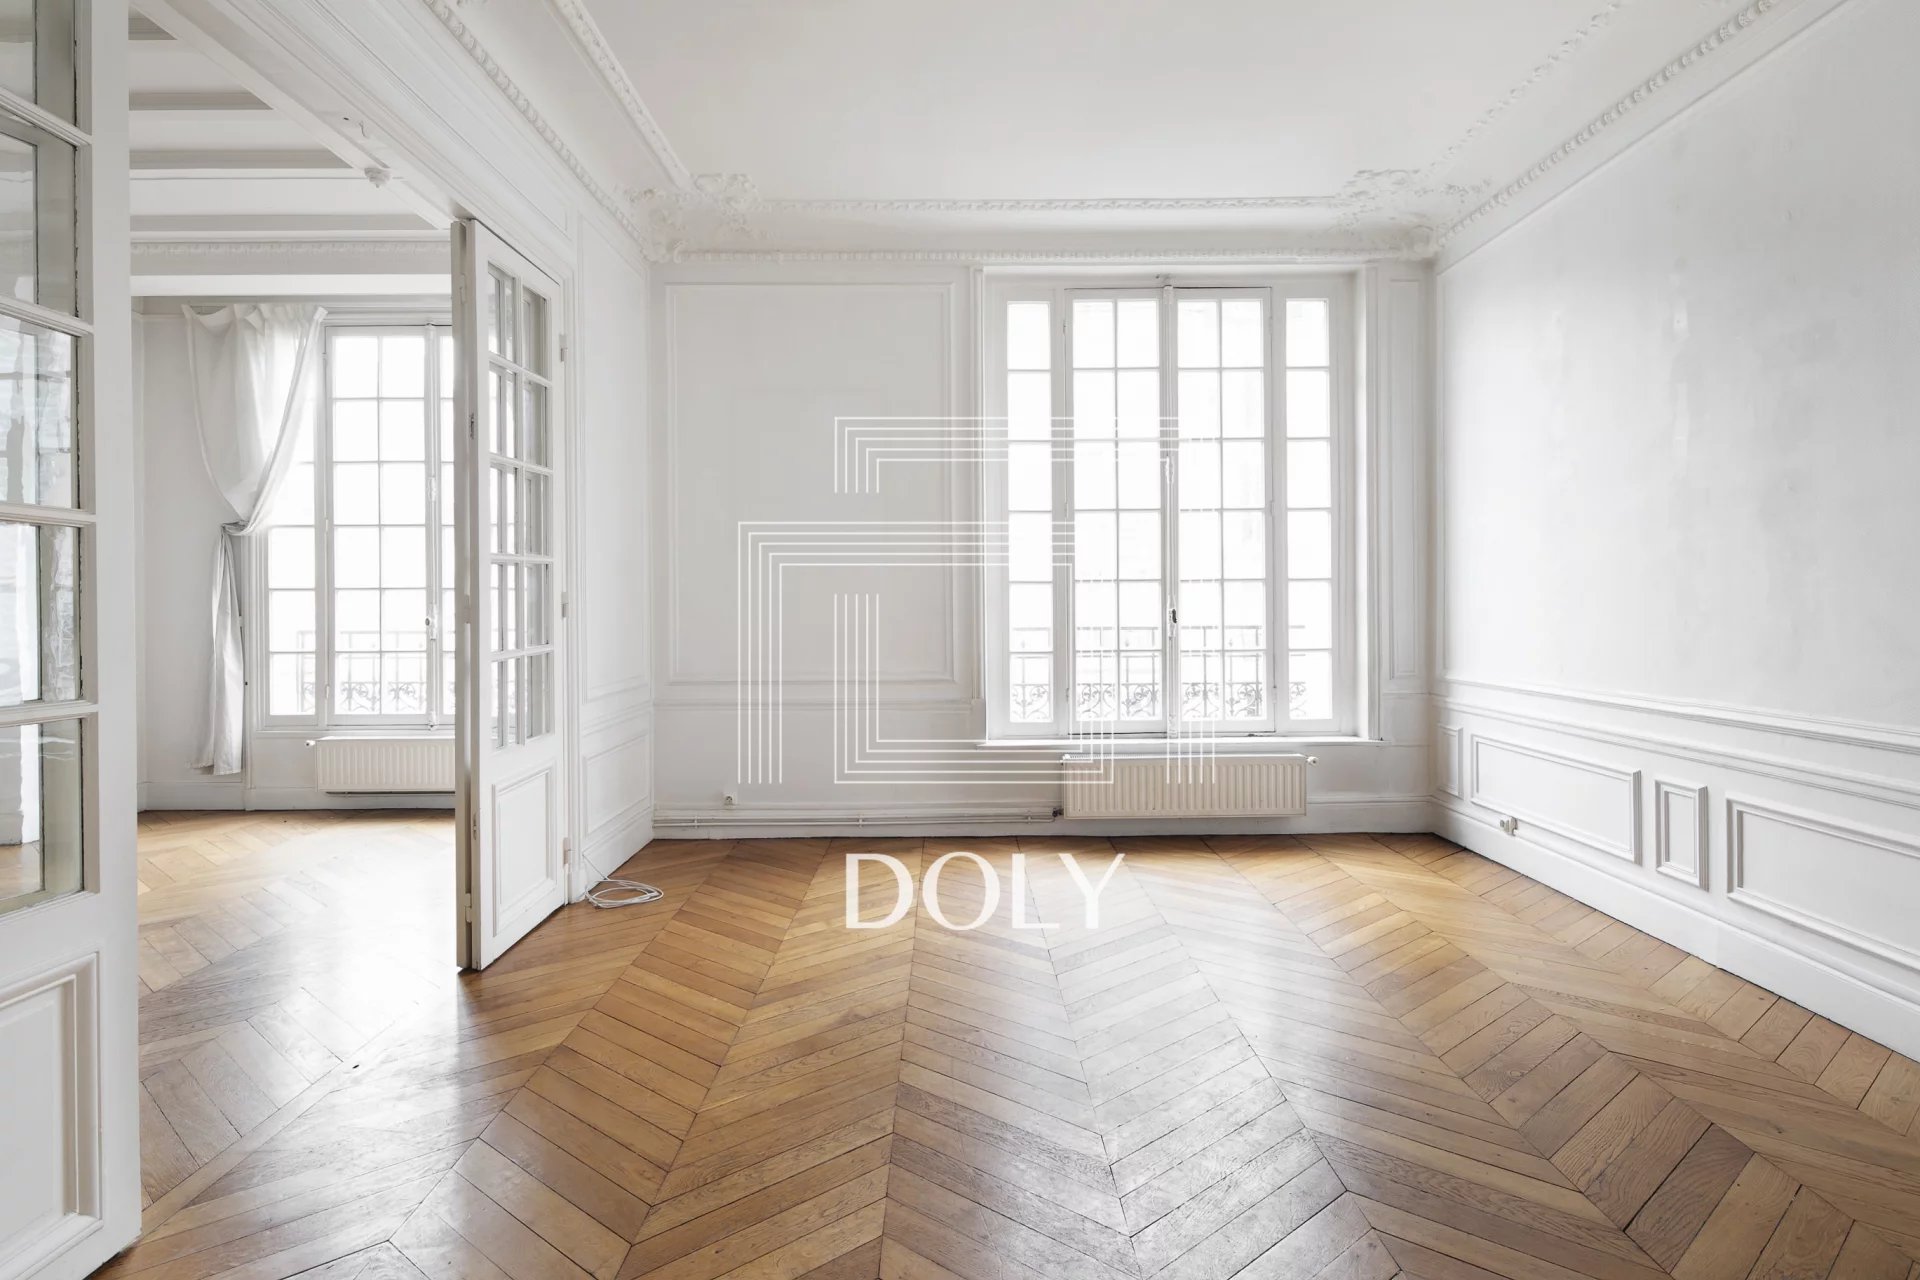 Appartement 5 pièces 120m2 // Rue Parrot // Paris XII